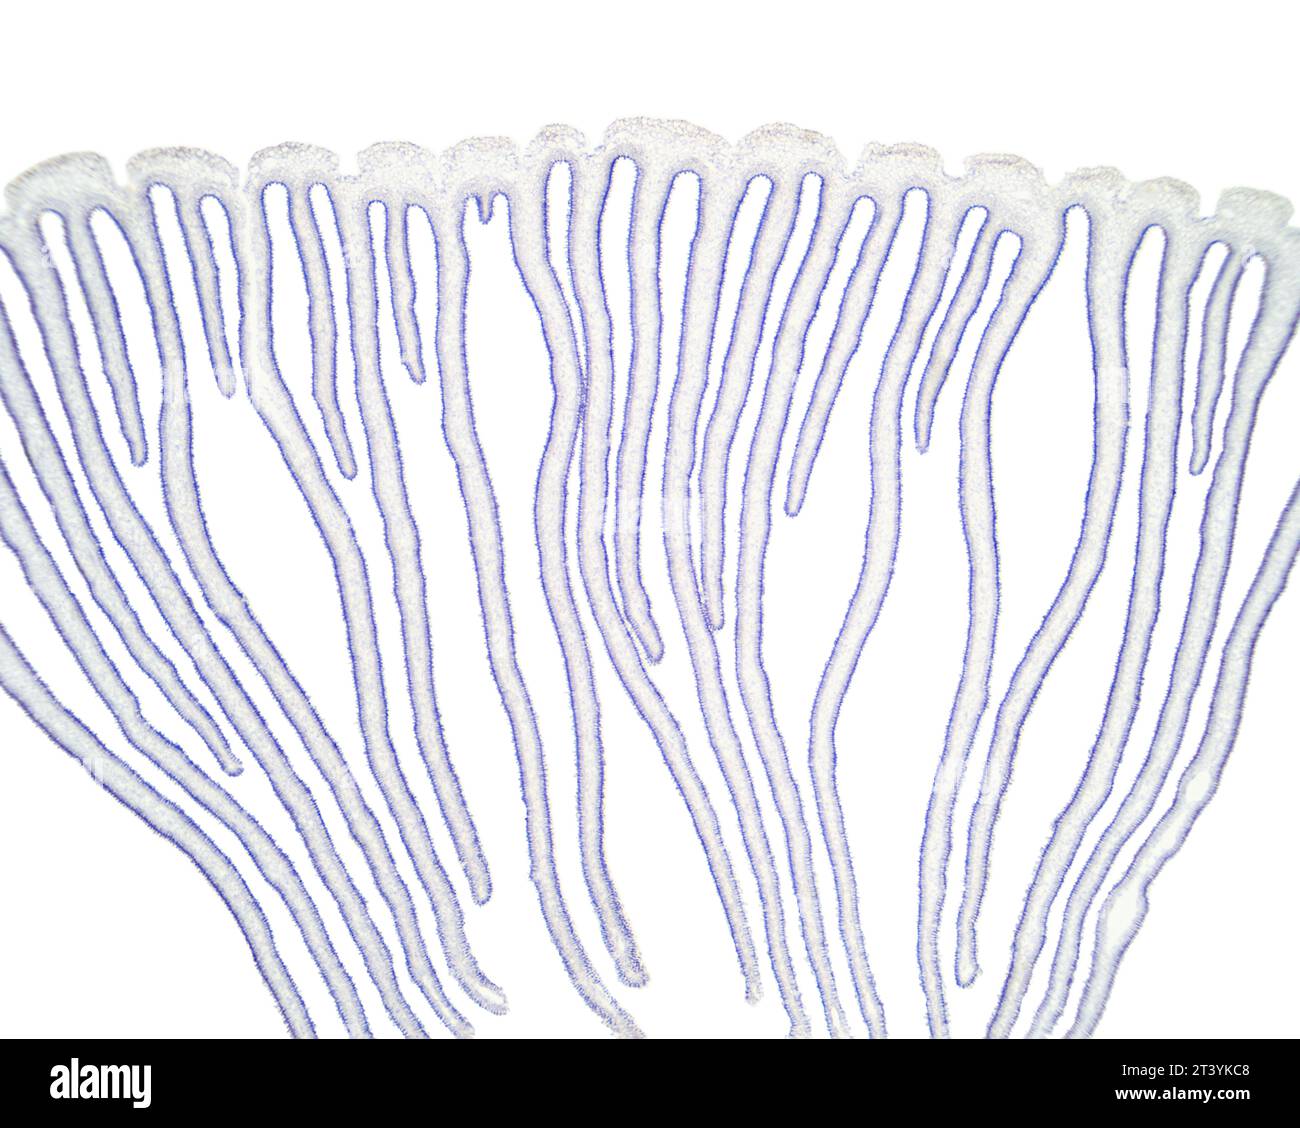 Tappo a fungo con lamelle, fungo agarico, sezione trasversale, micrografo leggero 20X. Tappo colorato e branchie, sezione trasversale sotto il microscopio leggero. Foto Stock